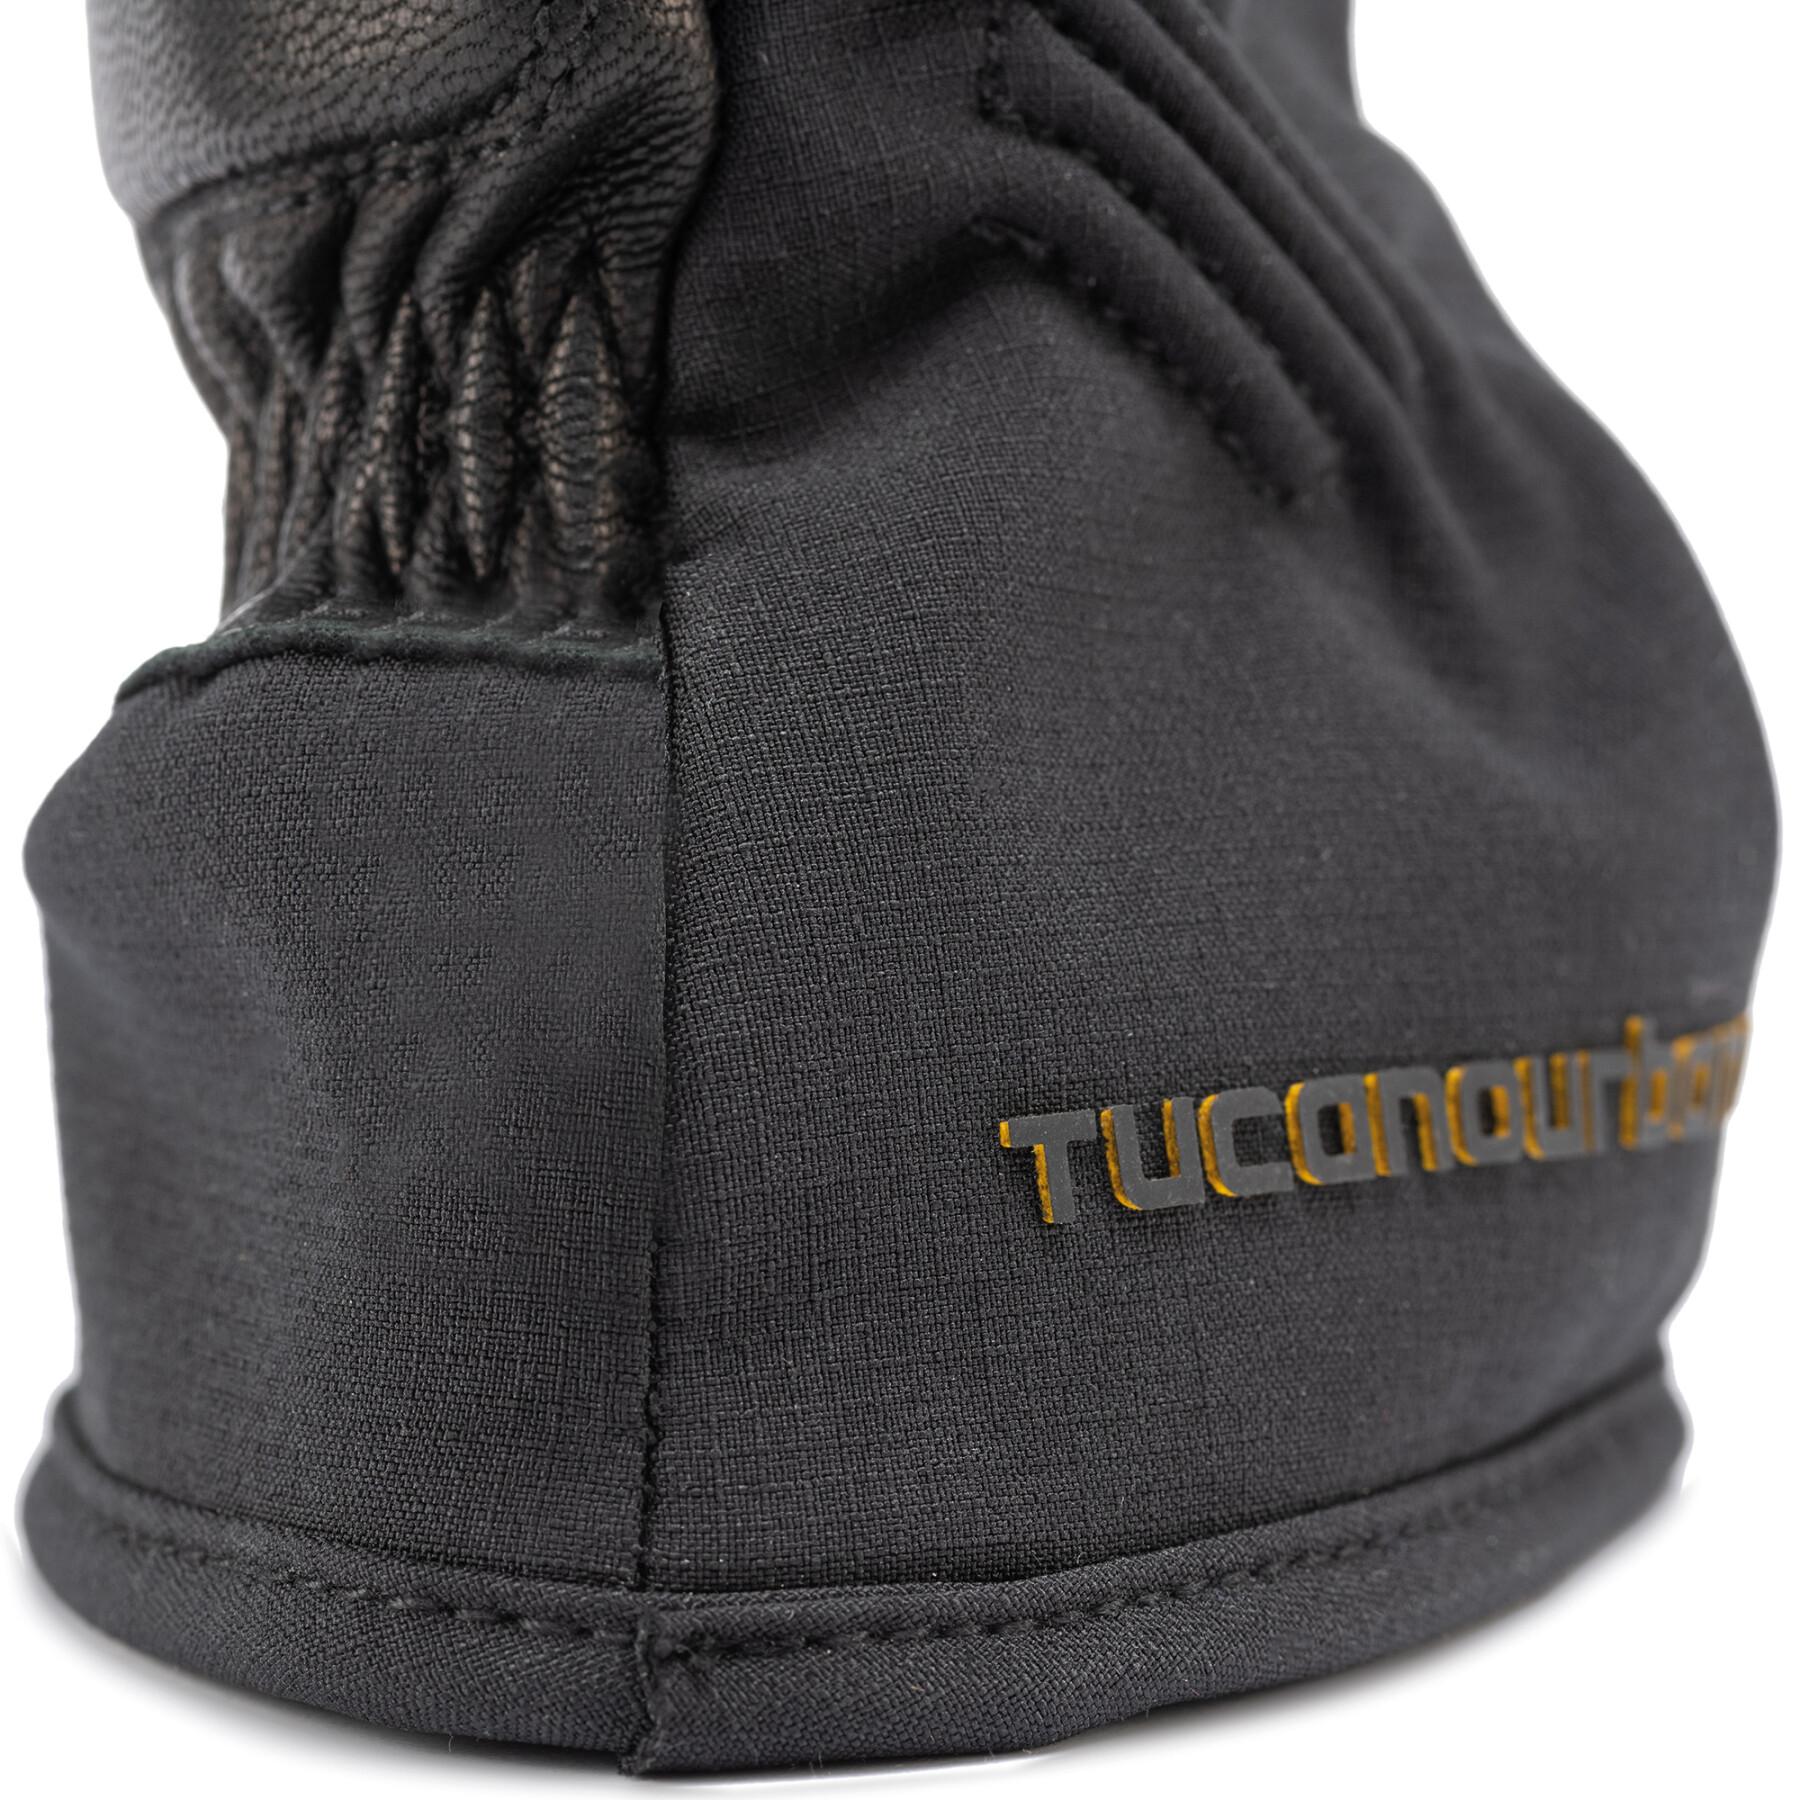 Winter motorcycle gloves Tucano Urbano Ginko 2g